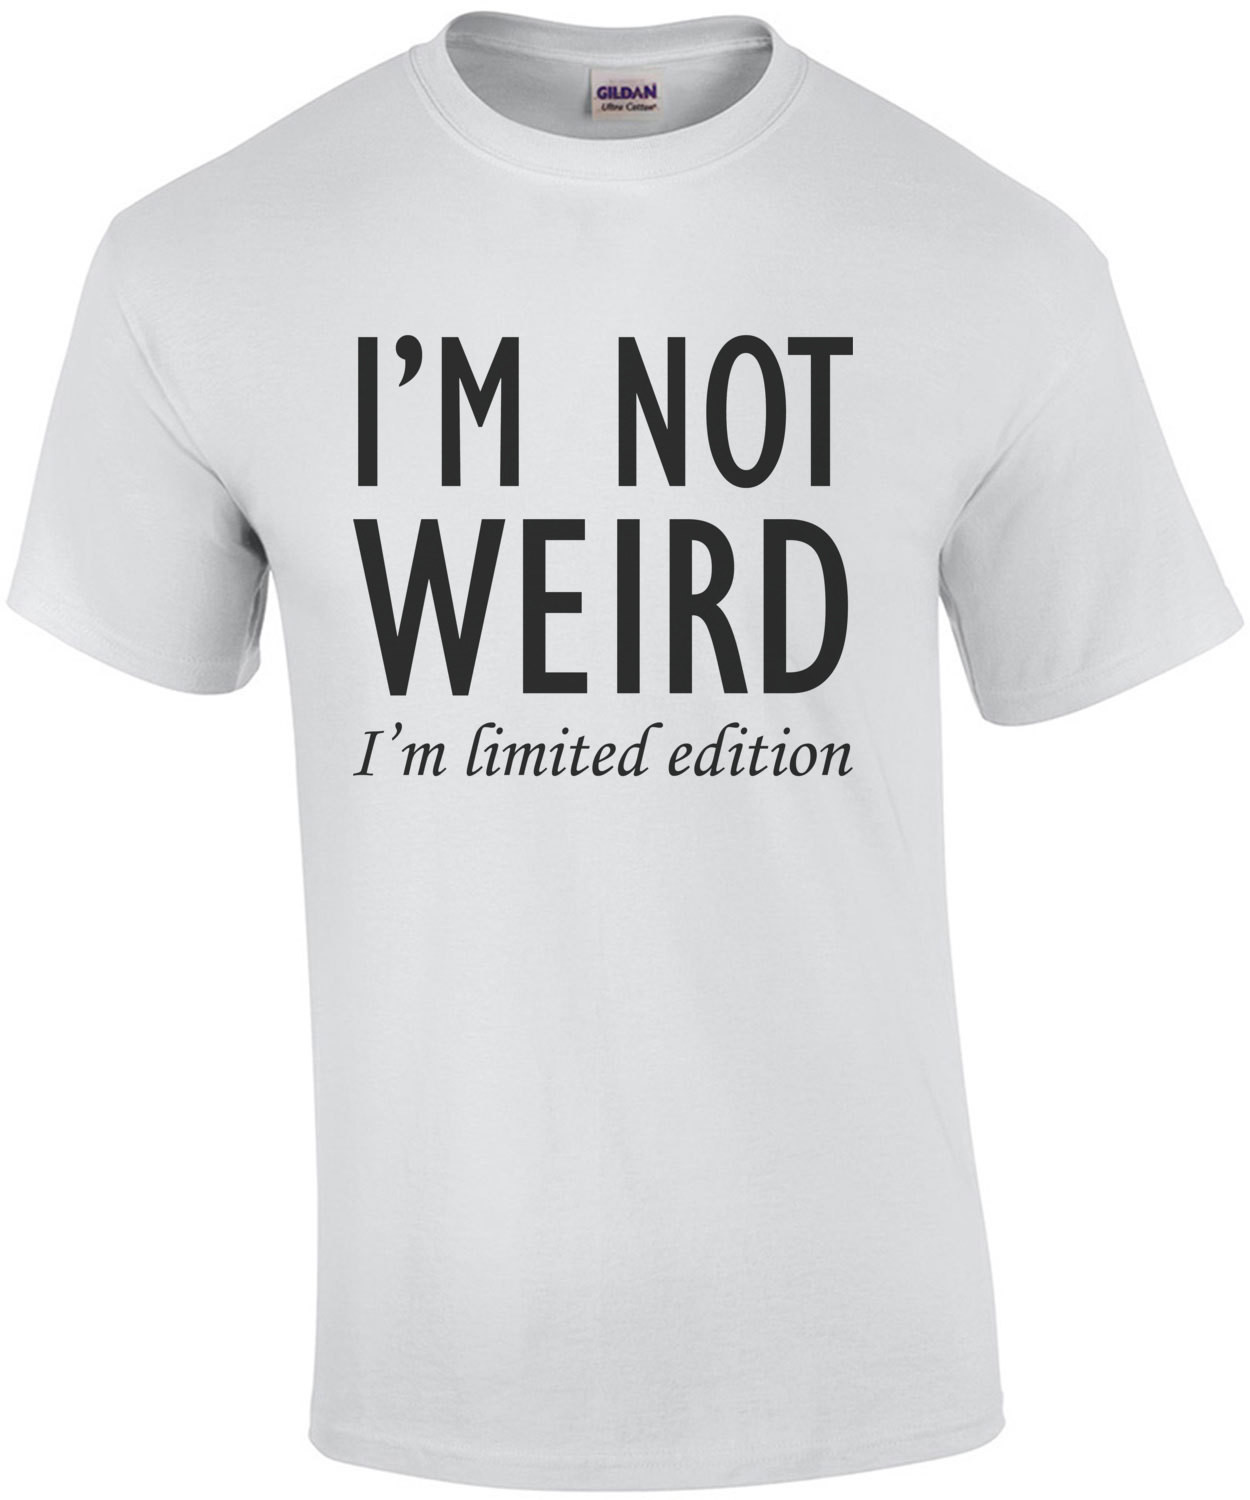 I'M NOT WEIRD. I'M LIMITED EDITION. Shirt